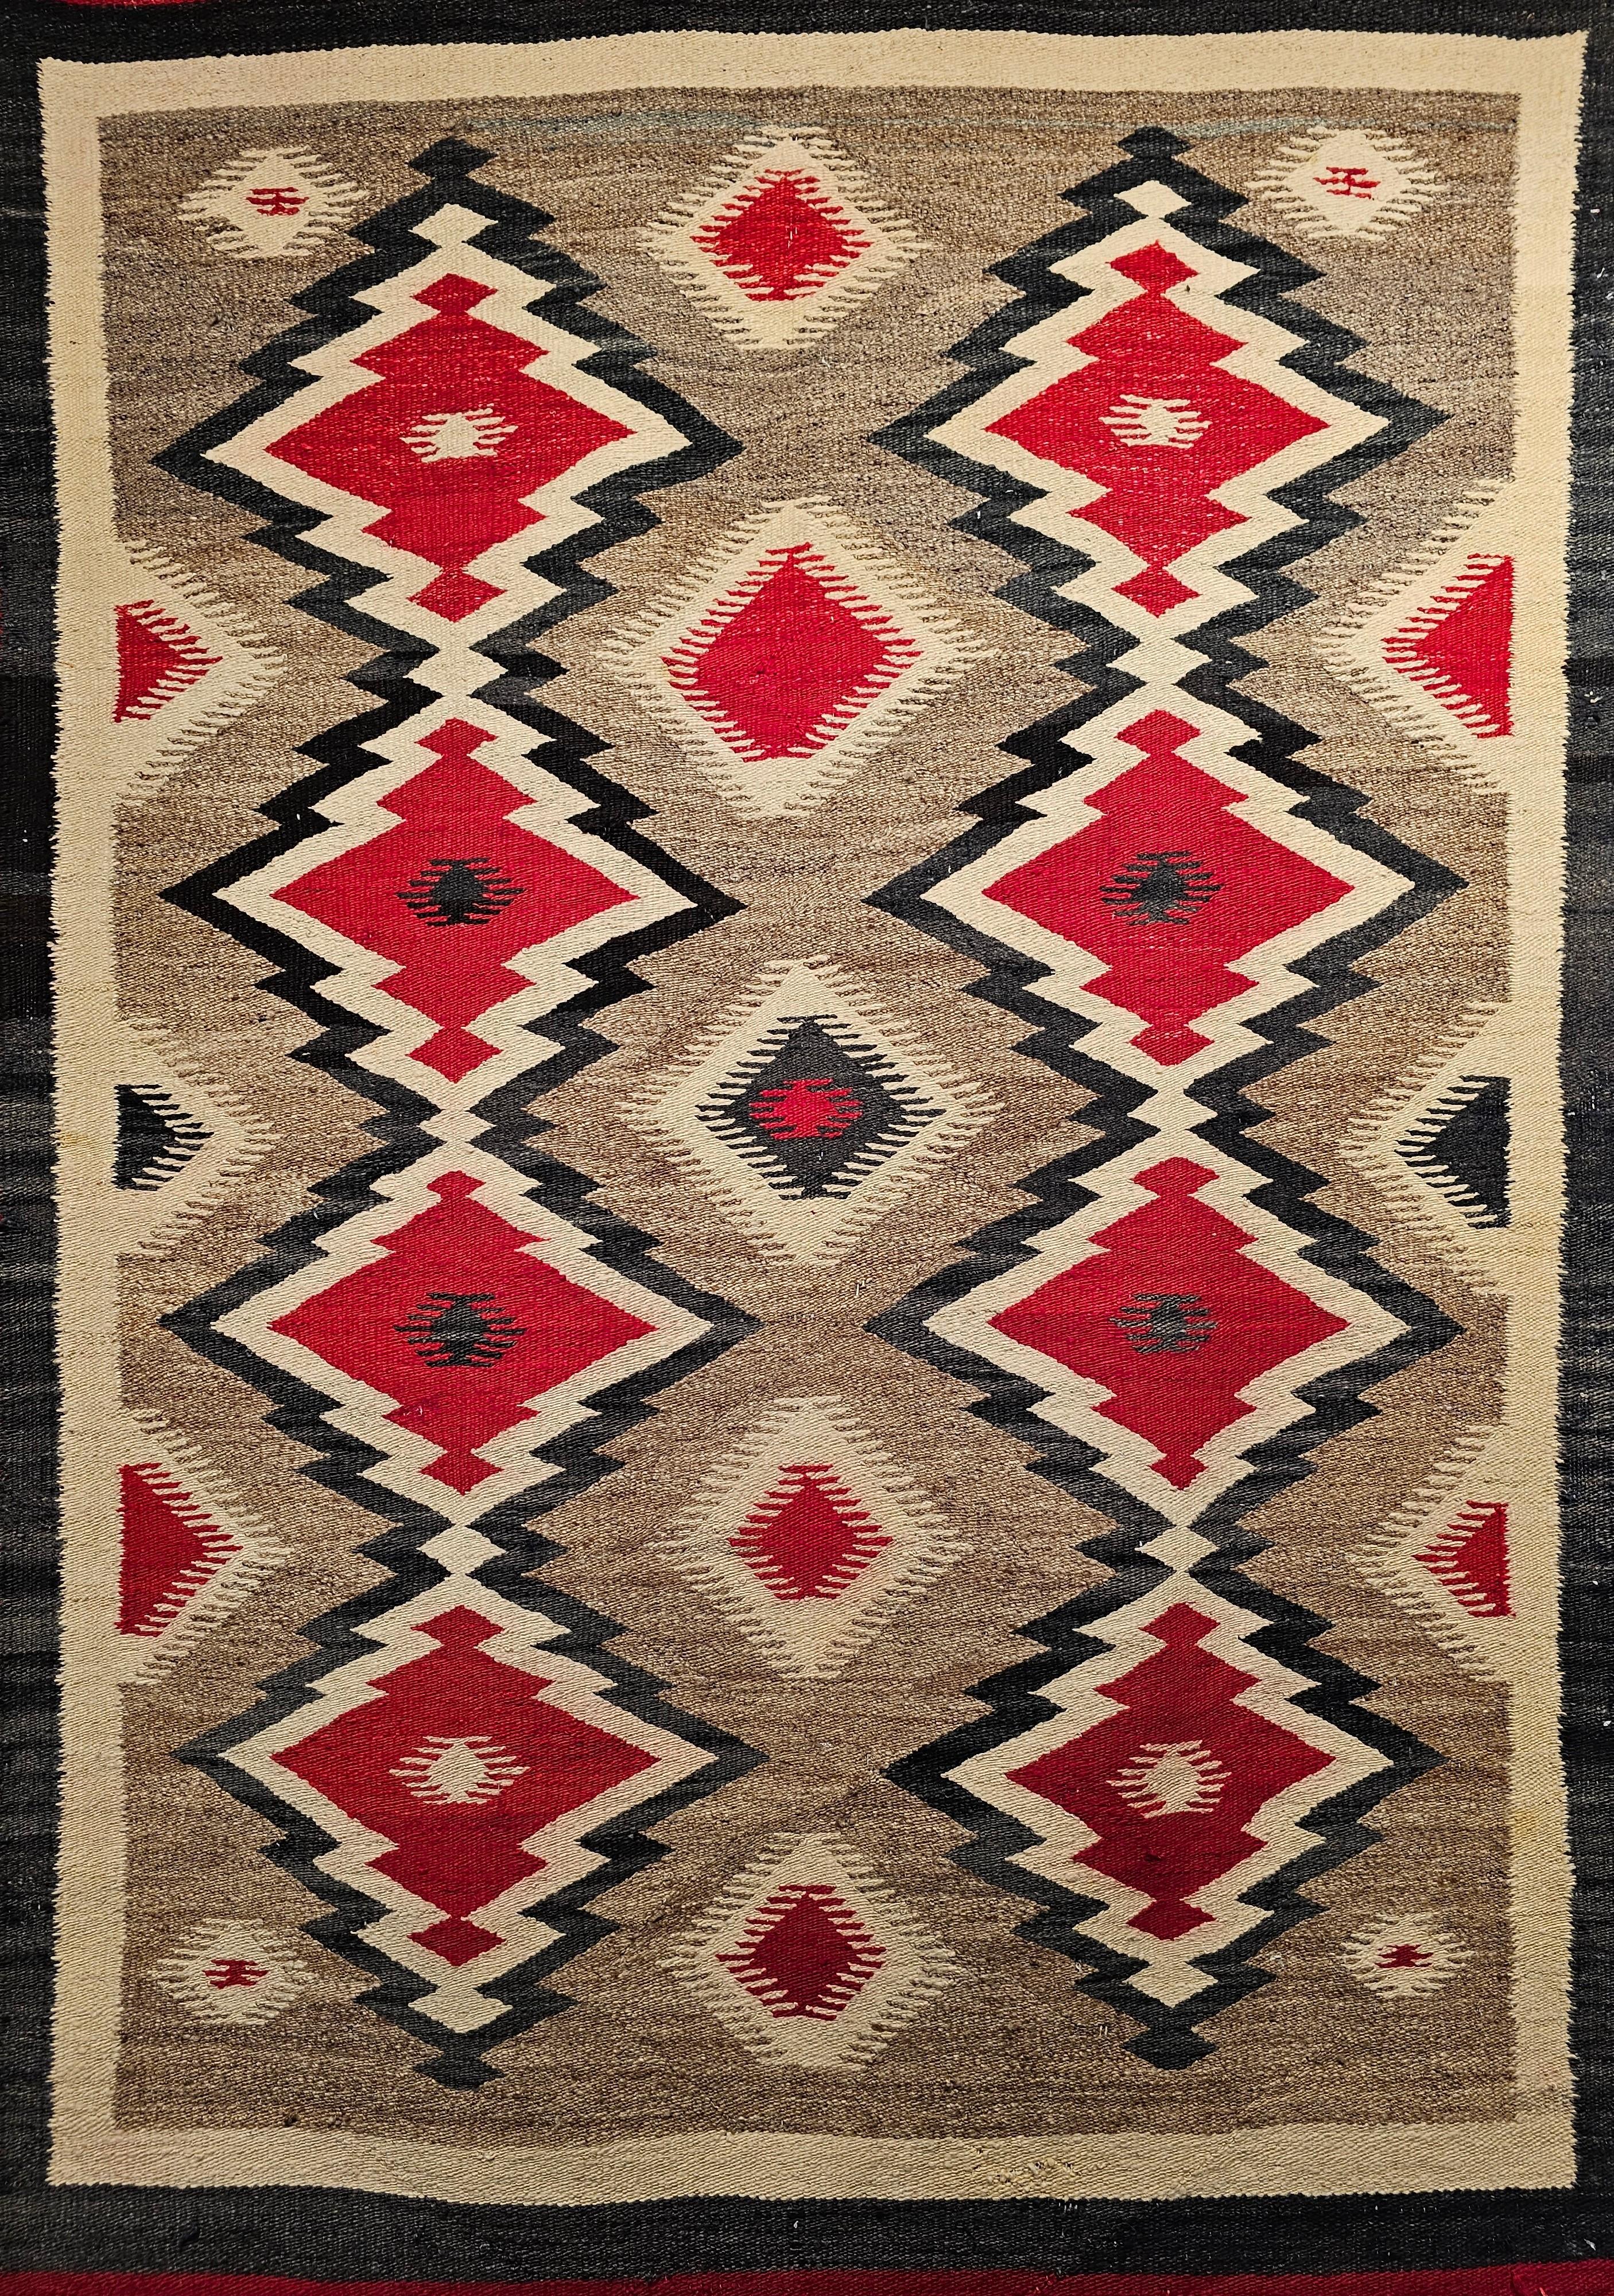  Feiner handgewebter Navajo-Teppich mit Eye Dazzler-Muster in Elfenbein, Rot und Schwarz aus dem Südwesten der Vereinigten Staaten aus den frühen 1900er Jahren.  Dieser Navajo-Teppich ist in einem geometrischen Design, bestehend aus zwei Spalten von